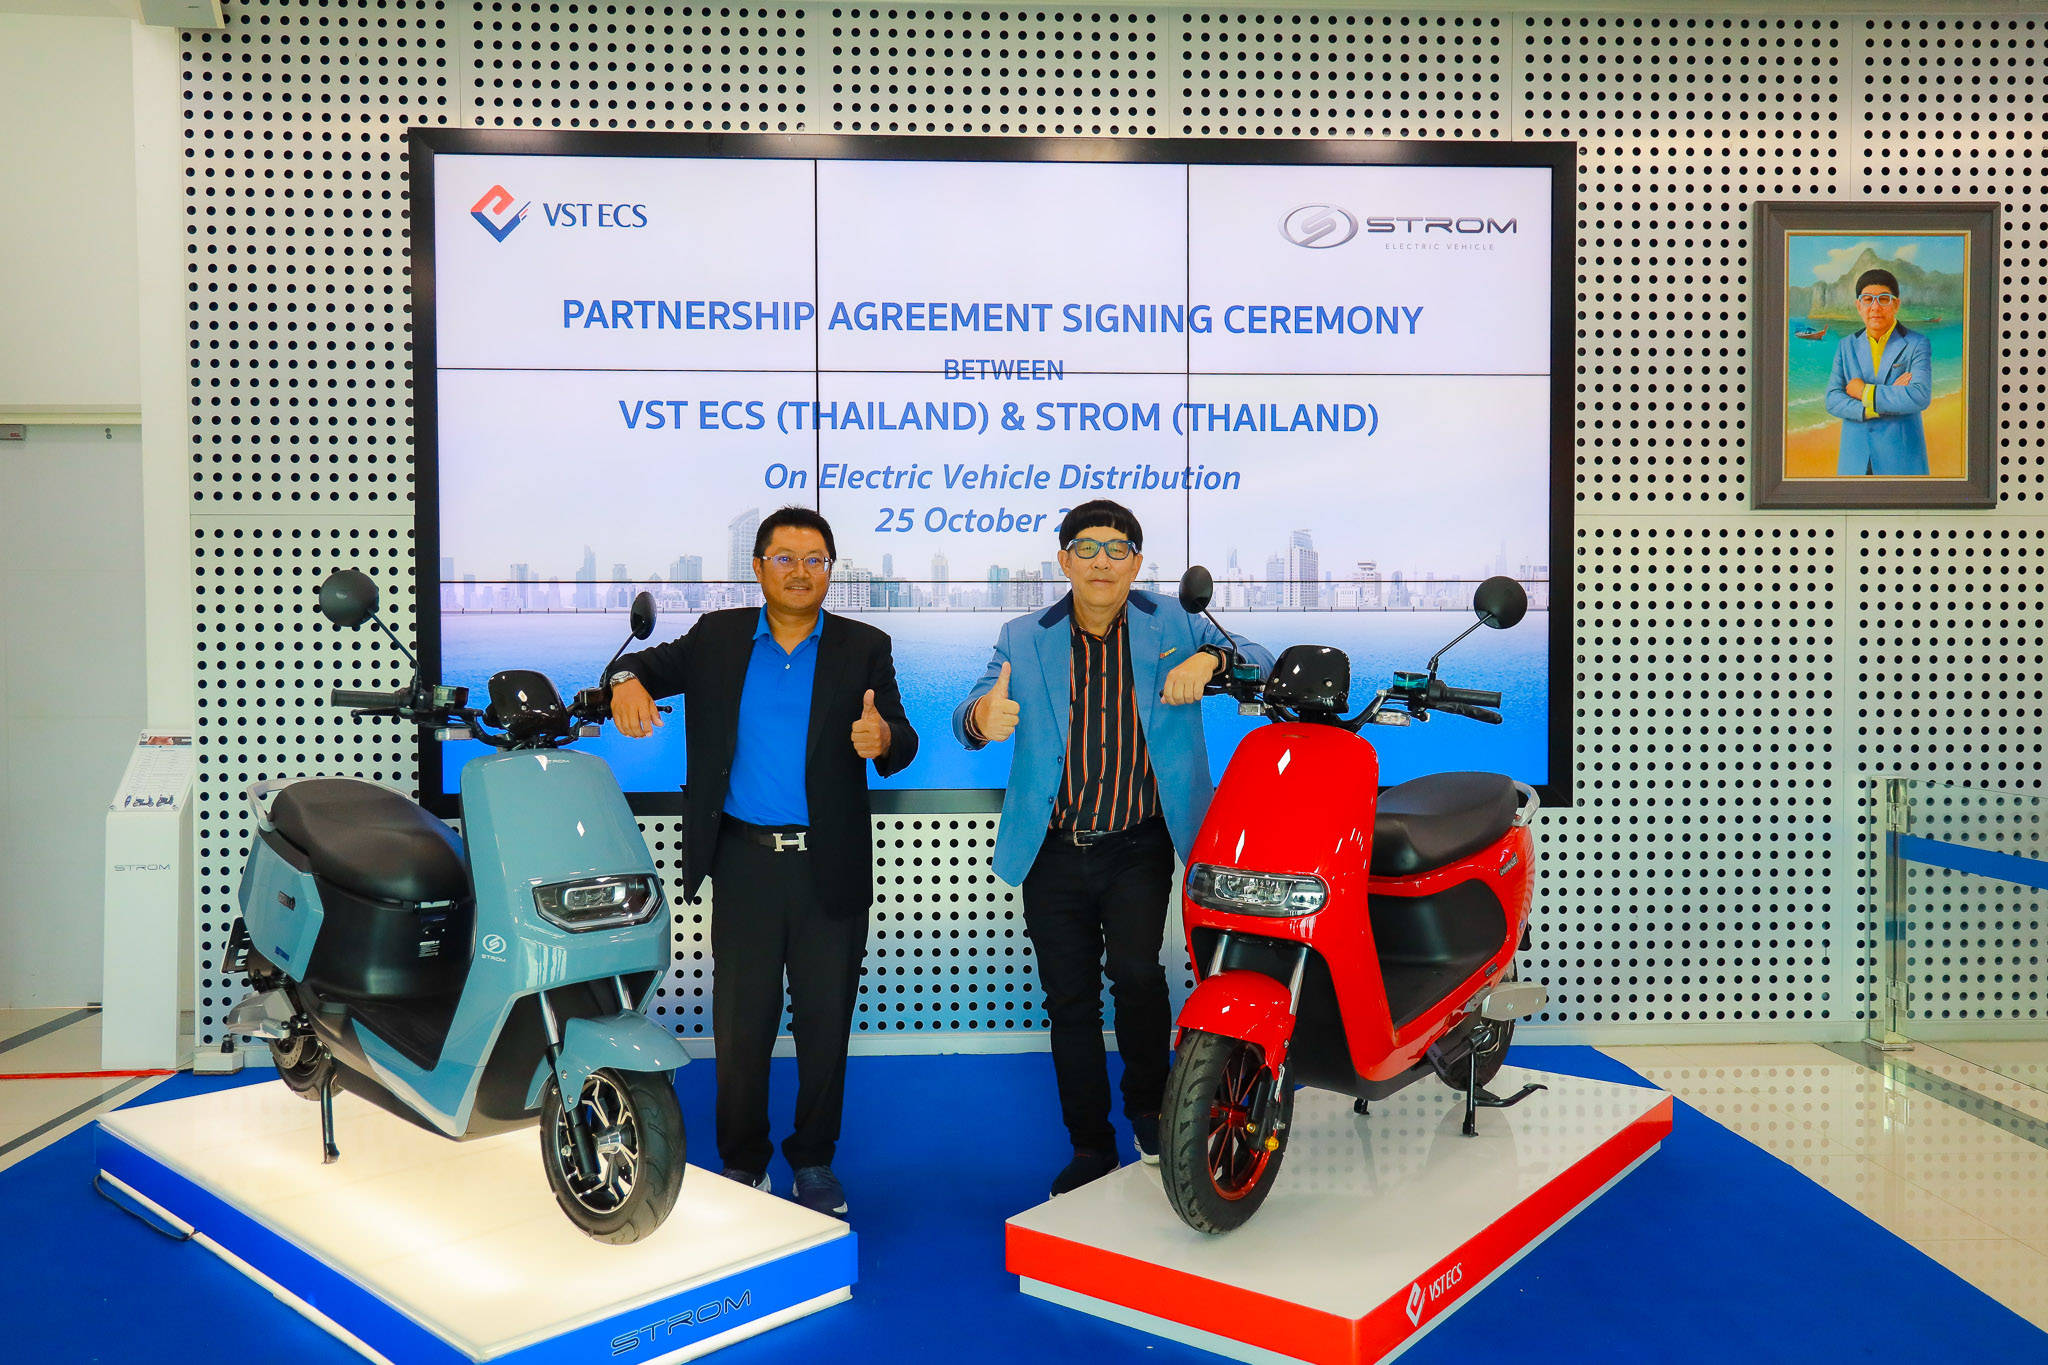 วีเอสที อีซีเอส (ประเทศไทย) ผนึกกำลัง สตรอม (ไทยแลนด์) รุกธุรกิจใหม่ ผู้บริหารการจัดจำหน่ายรถมอเตอร์ไซค์ไฟฟ้า